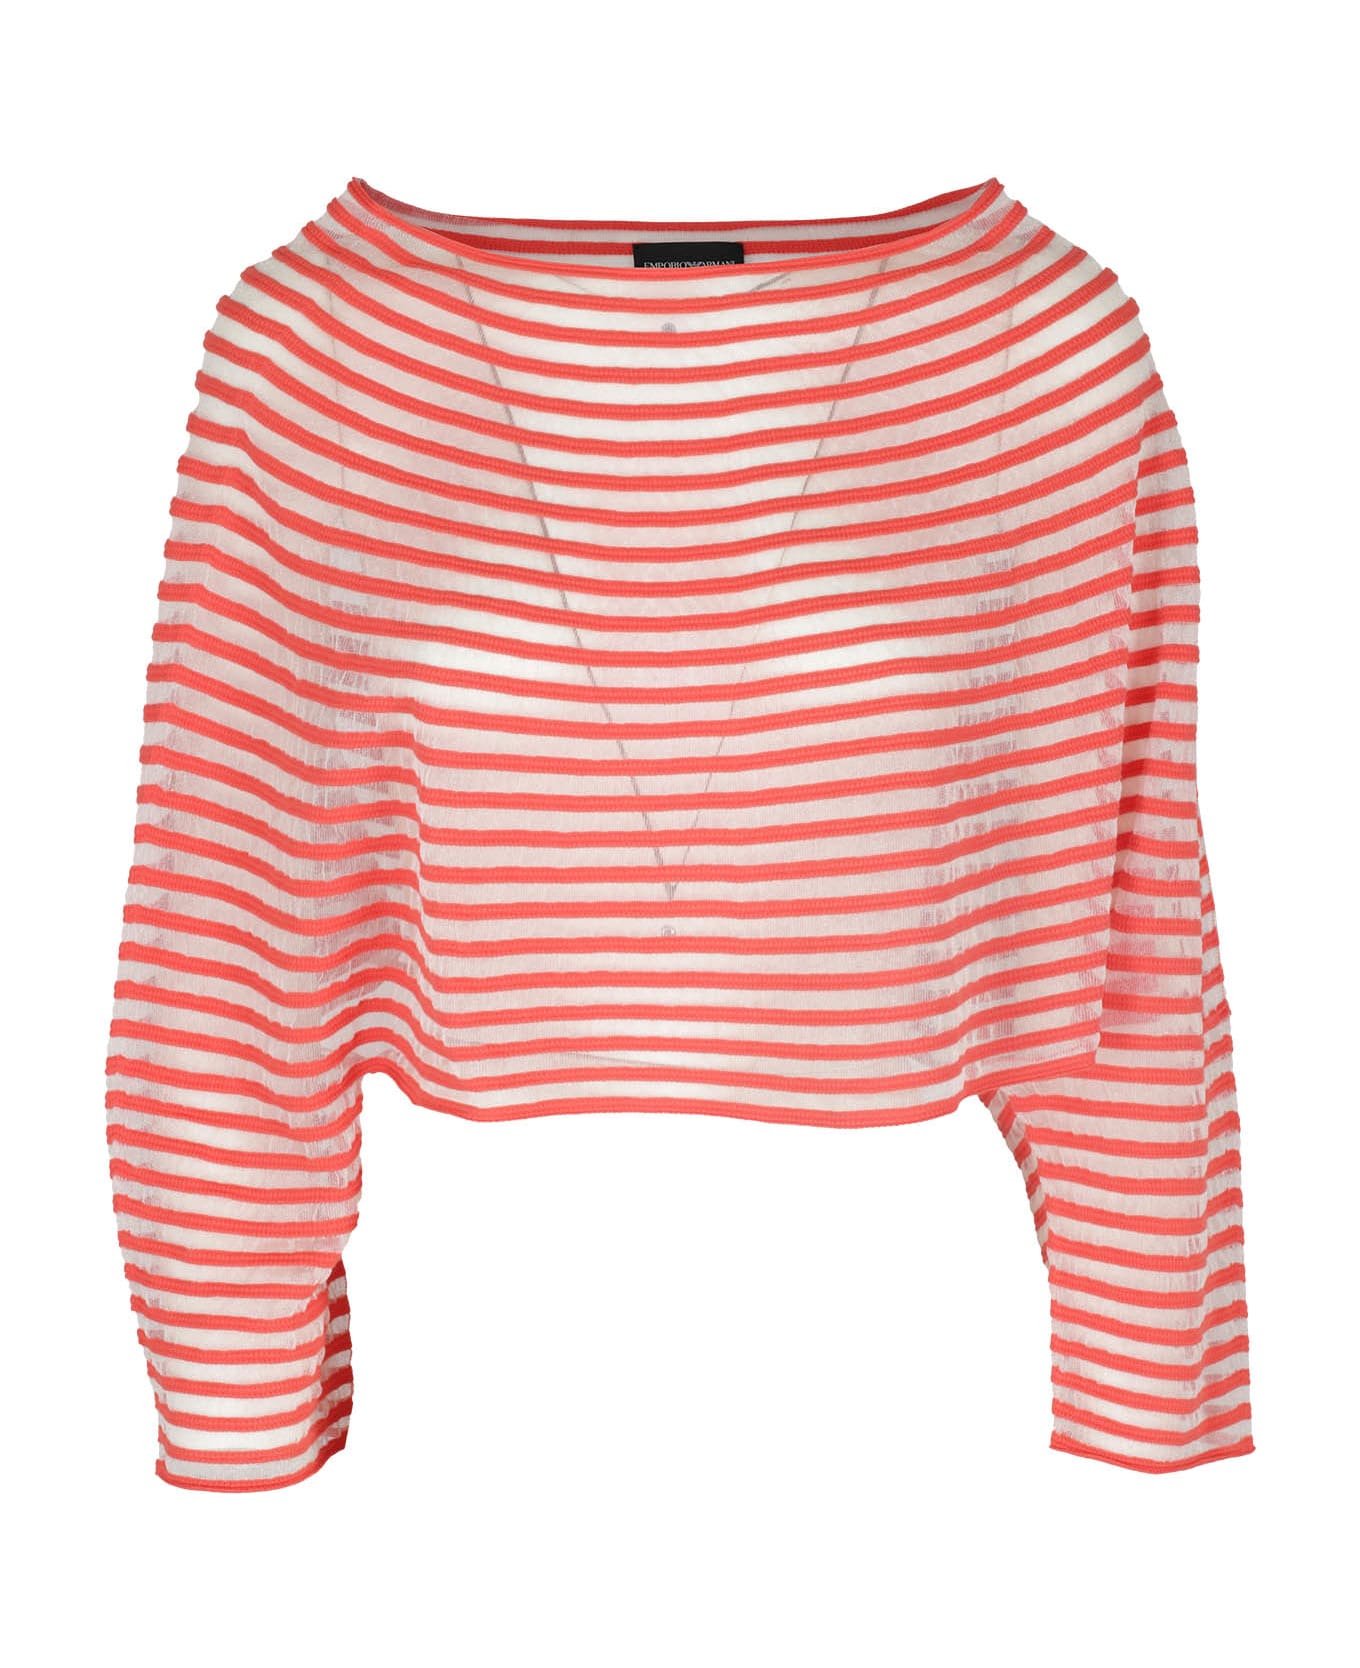 Emporio Armani Striped Knit Jumper - Red